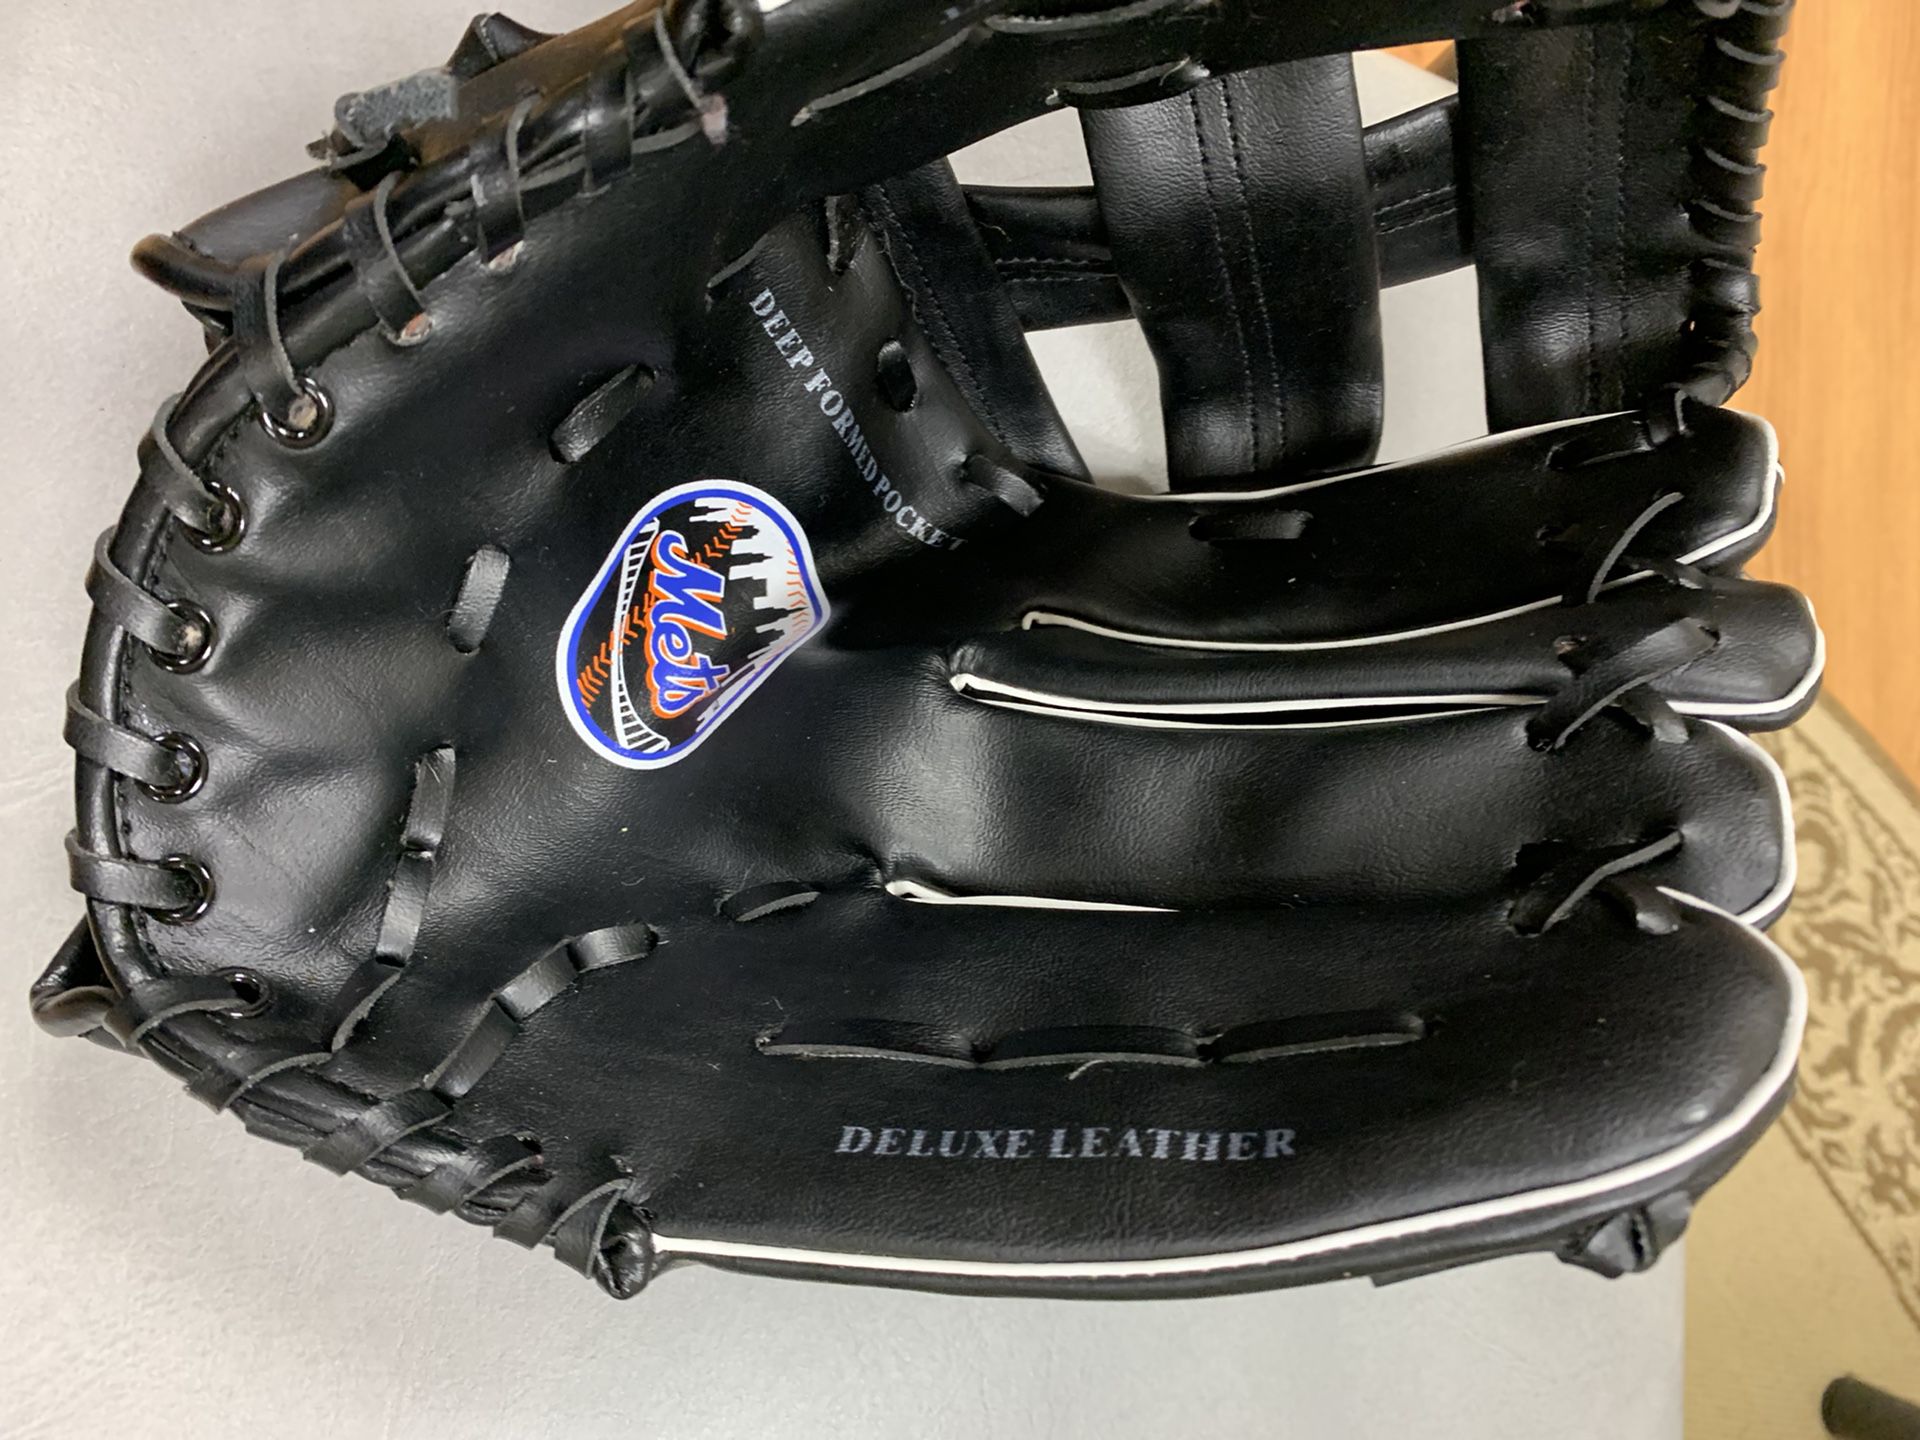 NY Mets Child’s Baseball Glove